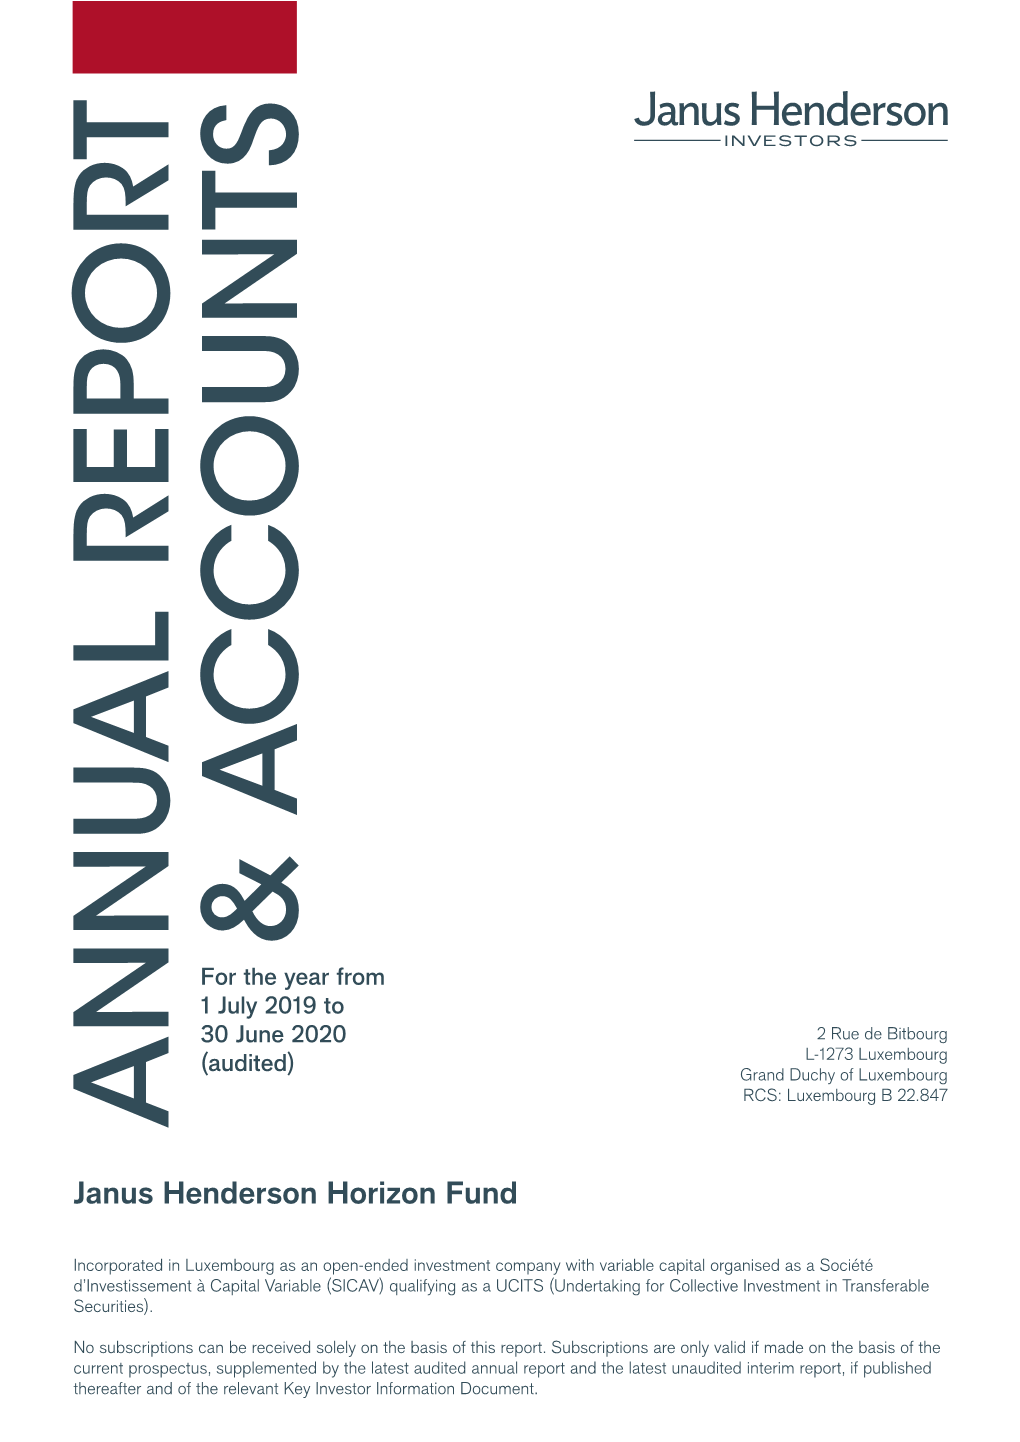 Janus Henderson Horizon Fund Annual Report